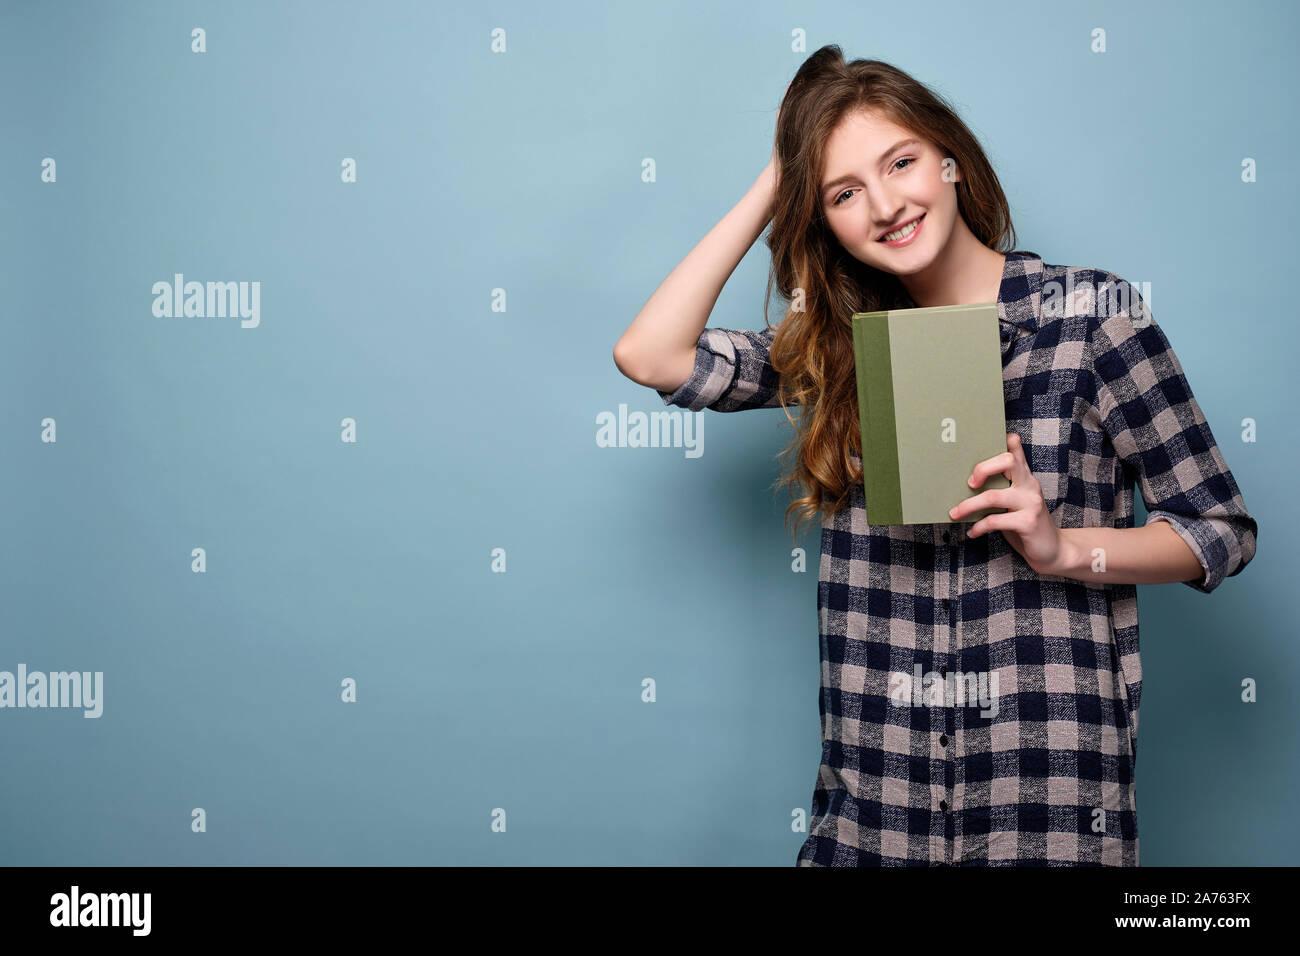 Una giovane ragazza in un abito di plaid sorge su uno sfondo blu e tiene un libro davanti a lui, esegue la sua mano attraverso i suoi capelli. Foto Stock